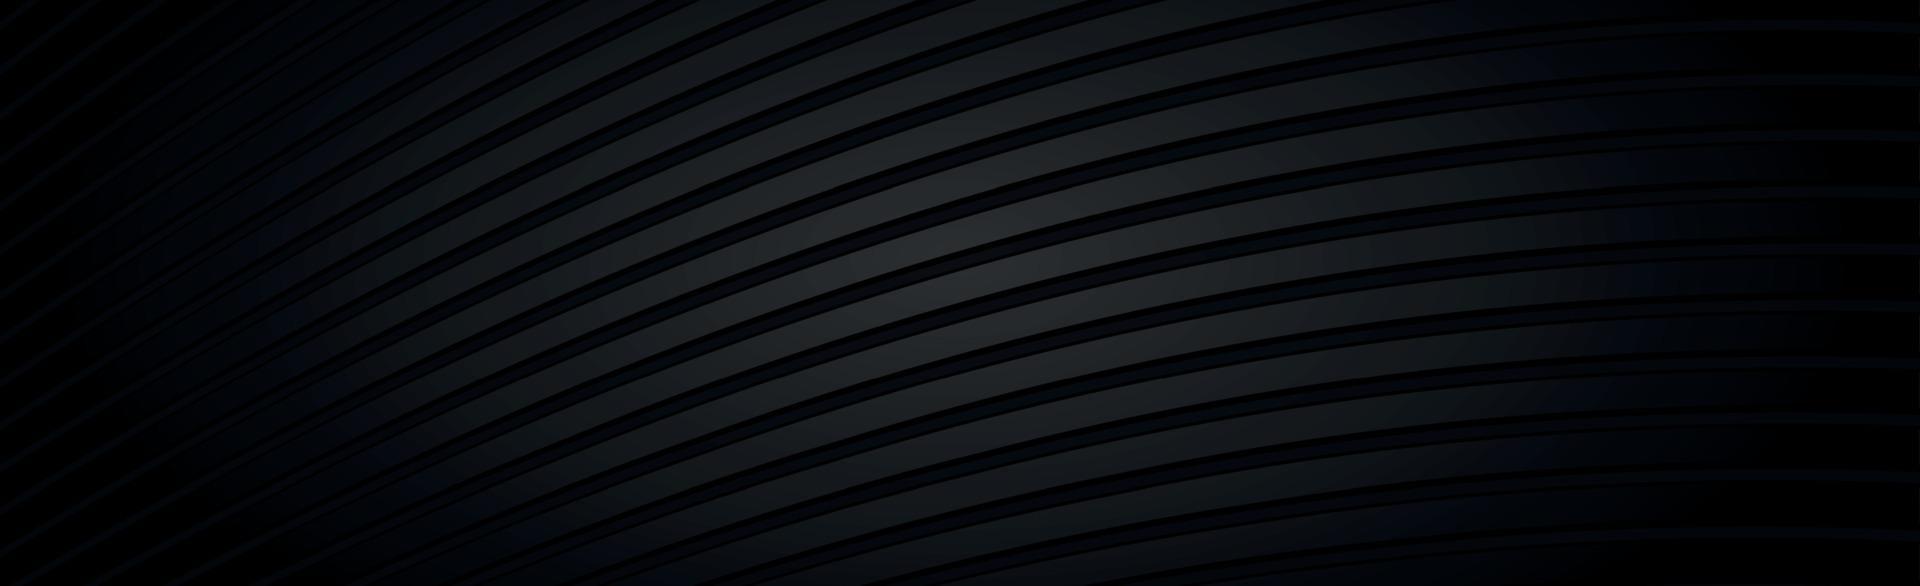 abstracte donkere zwarte getextureerde panoramische achtergrond - vector